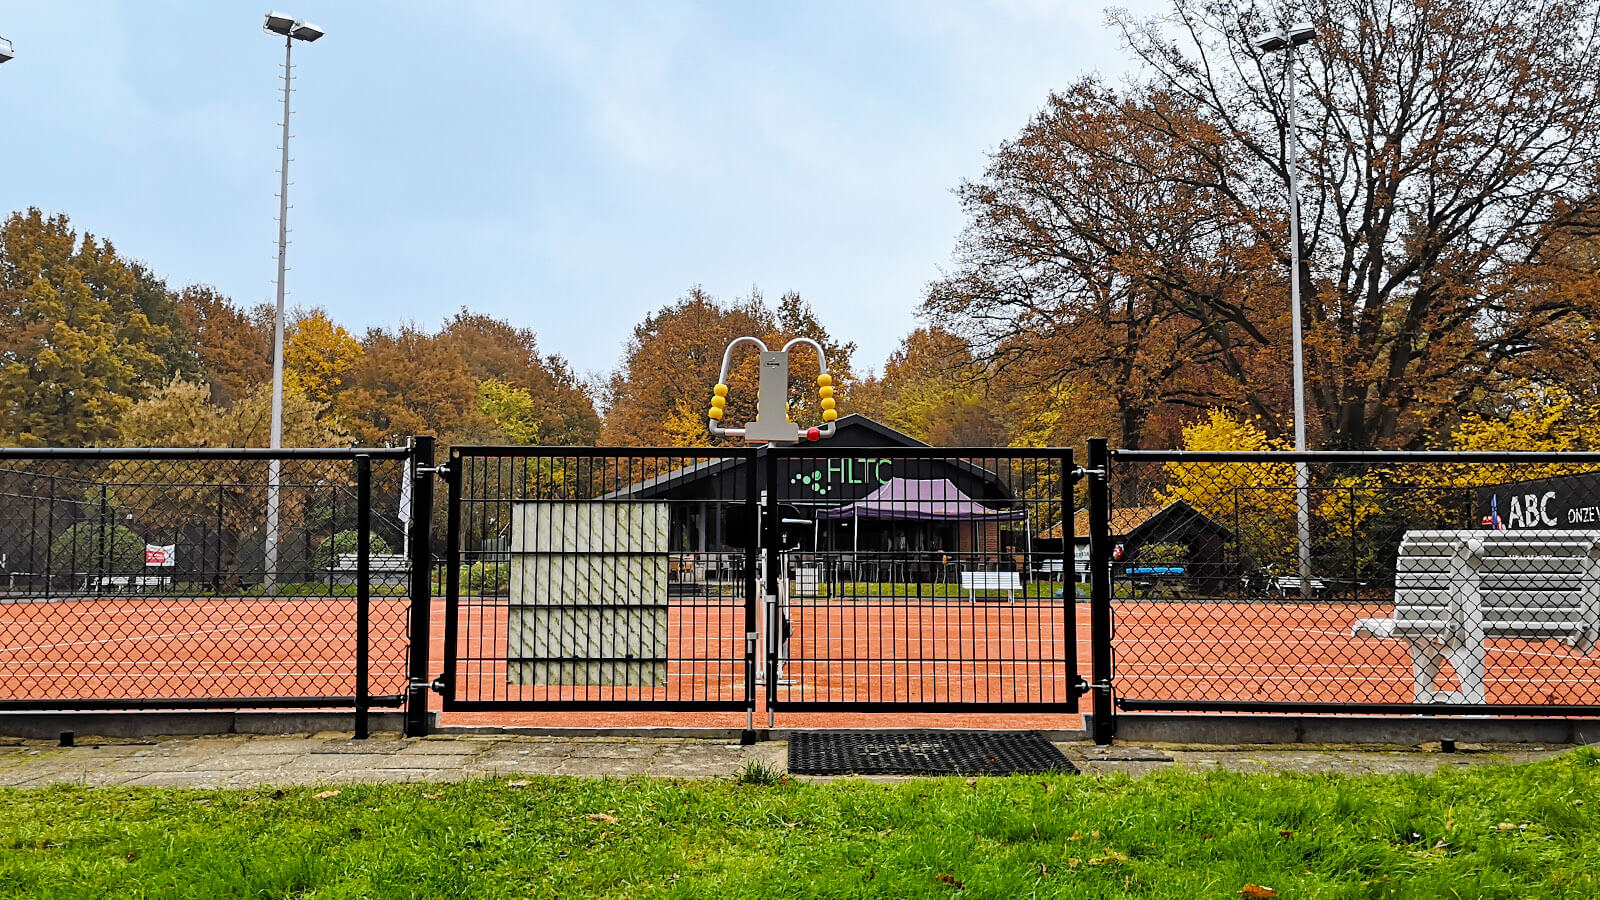 Tennisbaan-dubbele-poort-Abchekwerk-Heerde